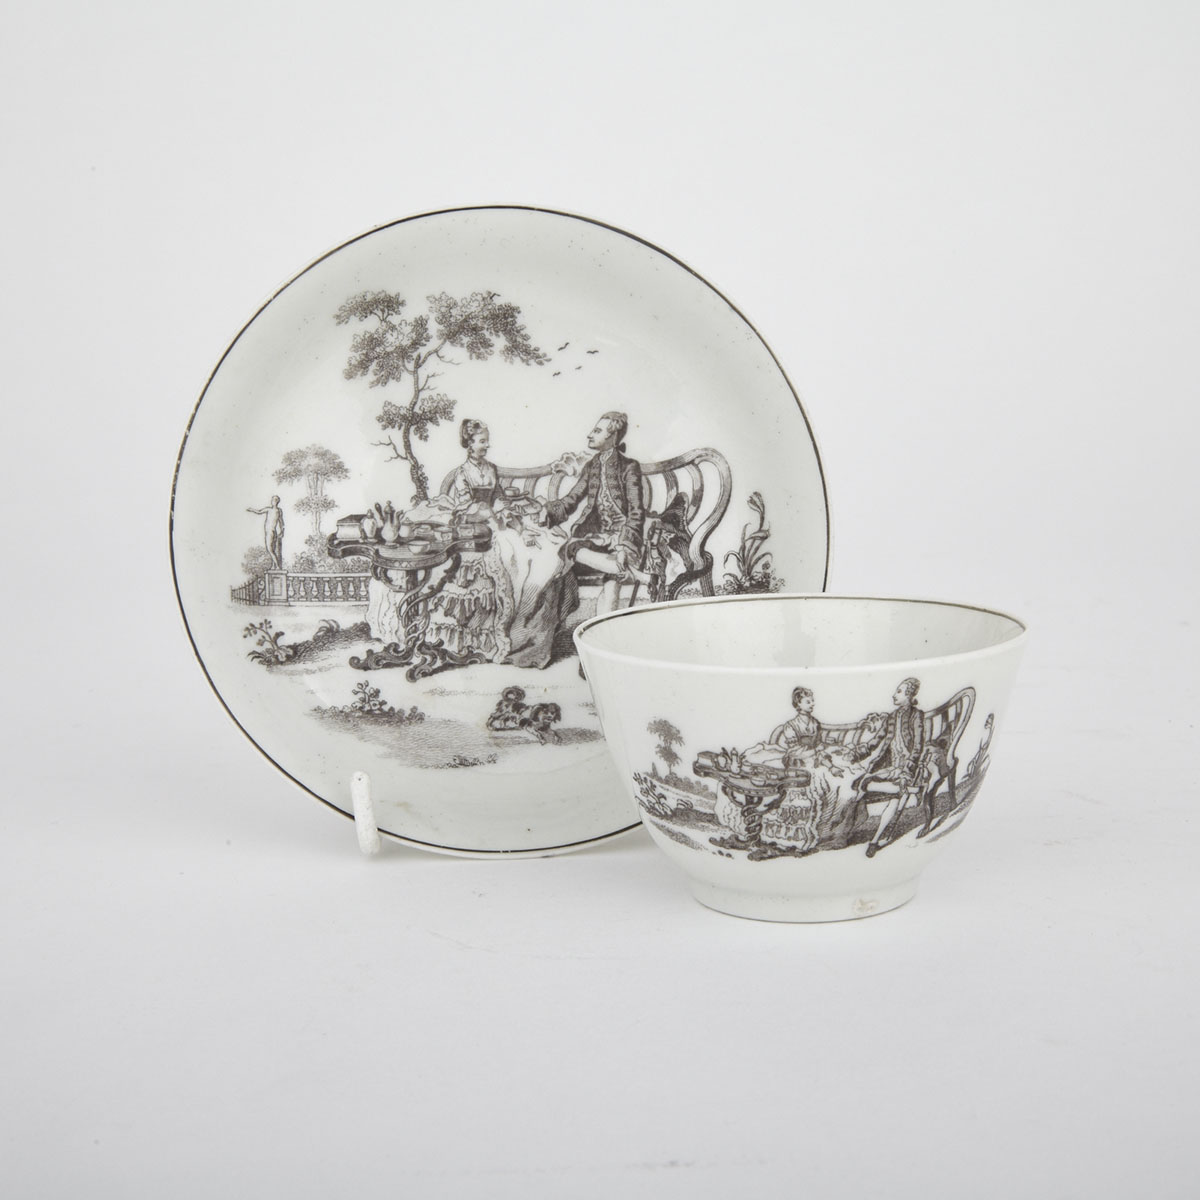 Worcester, ‘Tea Party’ Tea Bowl and Saucer, c.1760